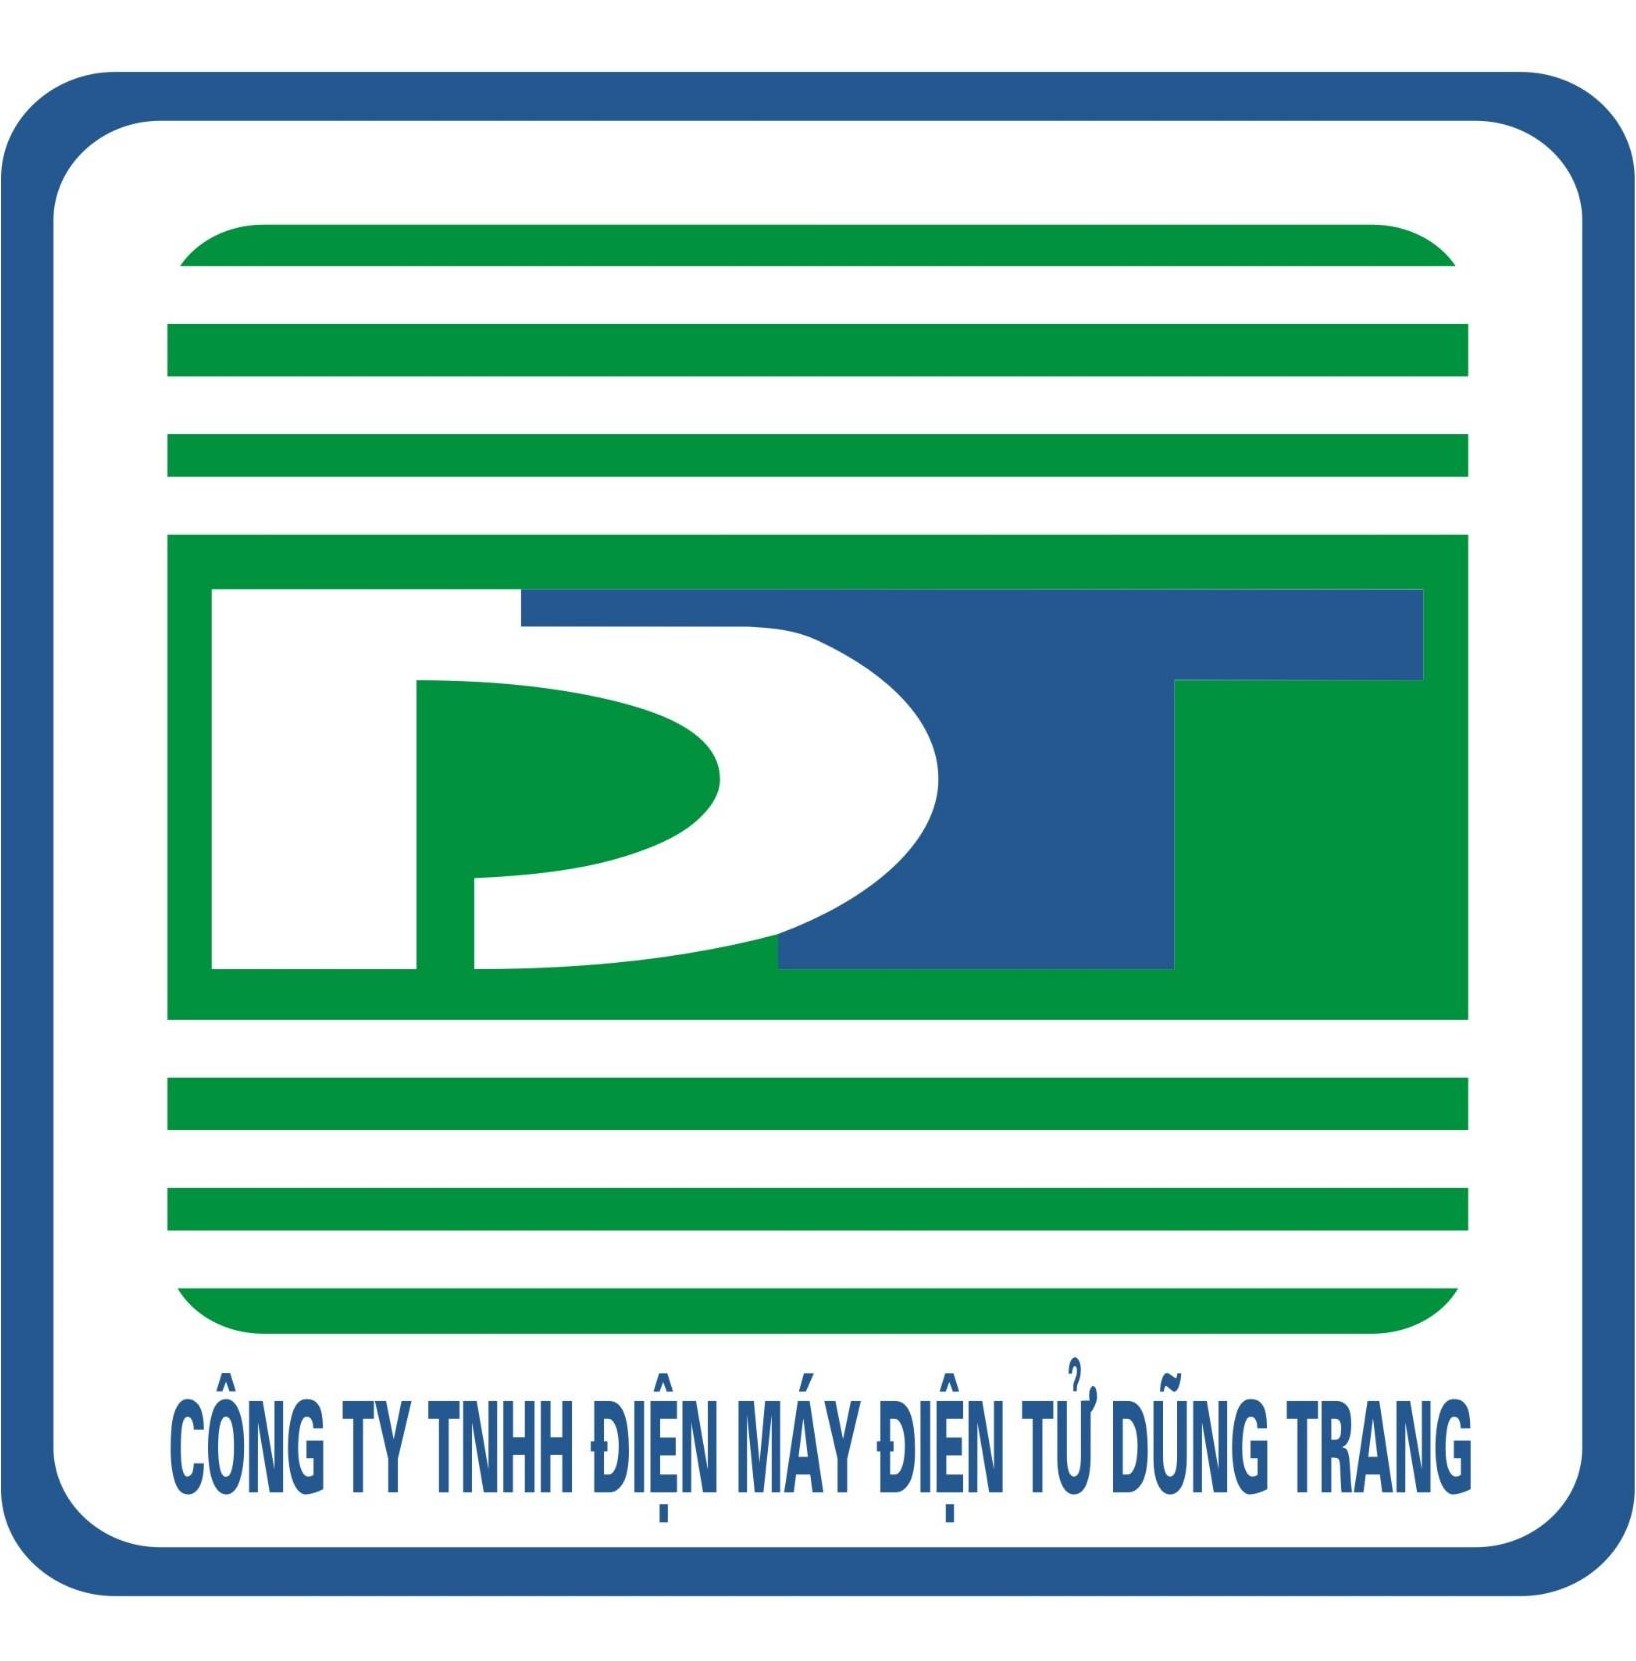 Công ty TNHH – Điện máy điện tử Dũng Trang